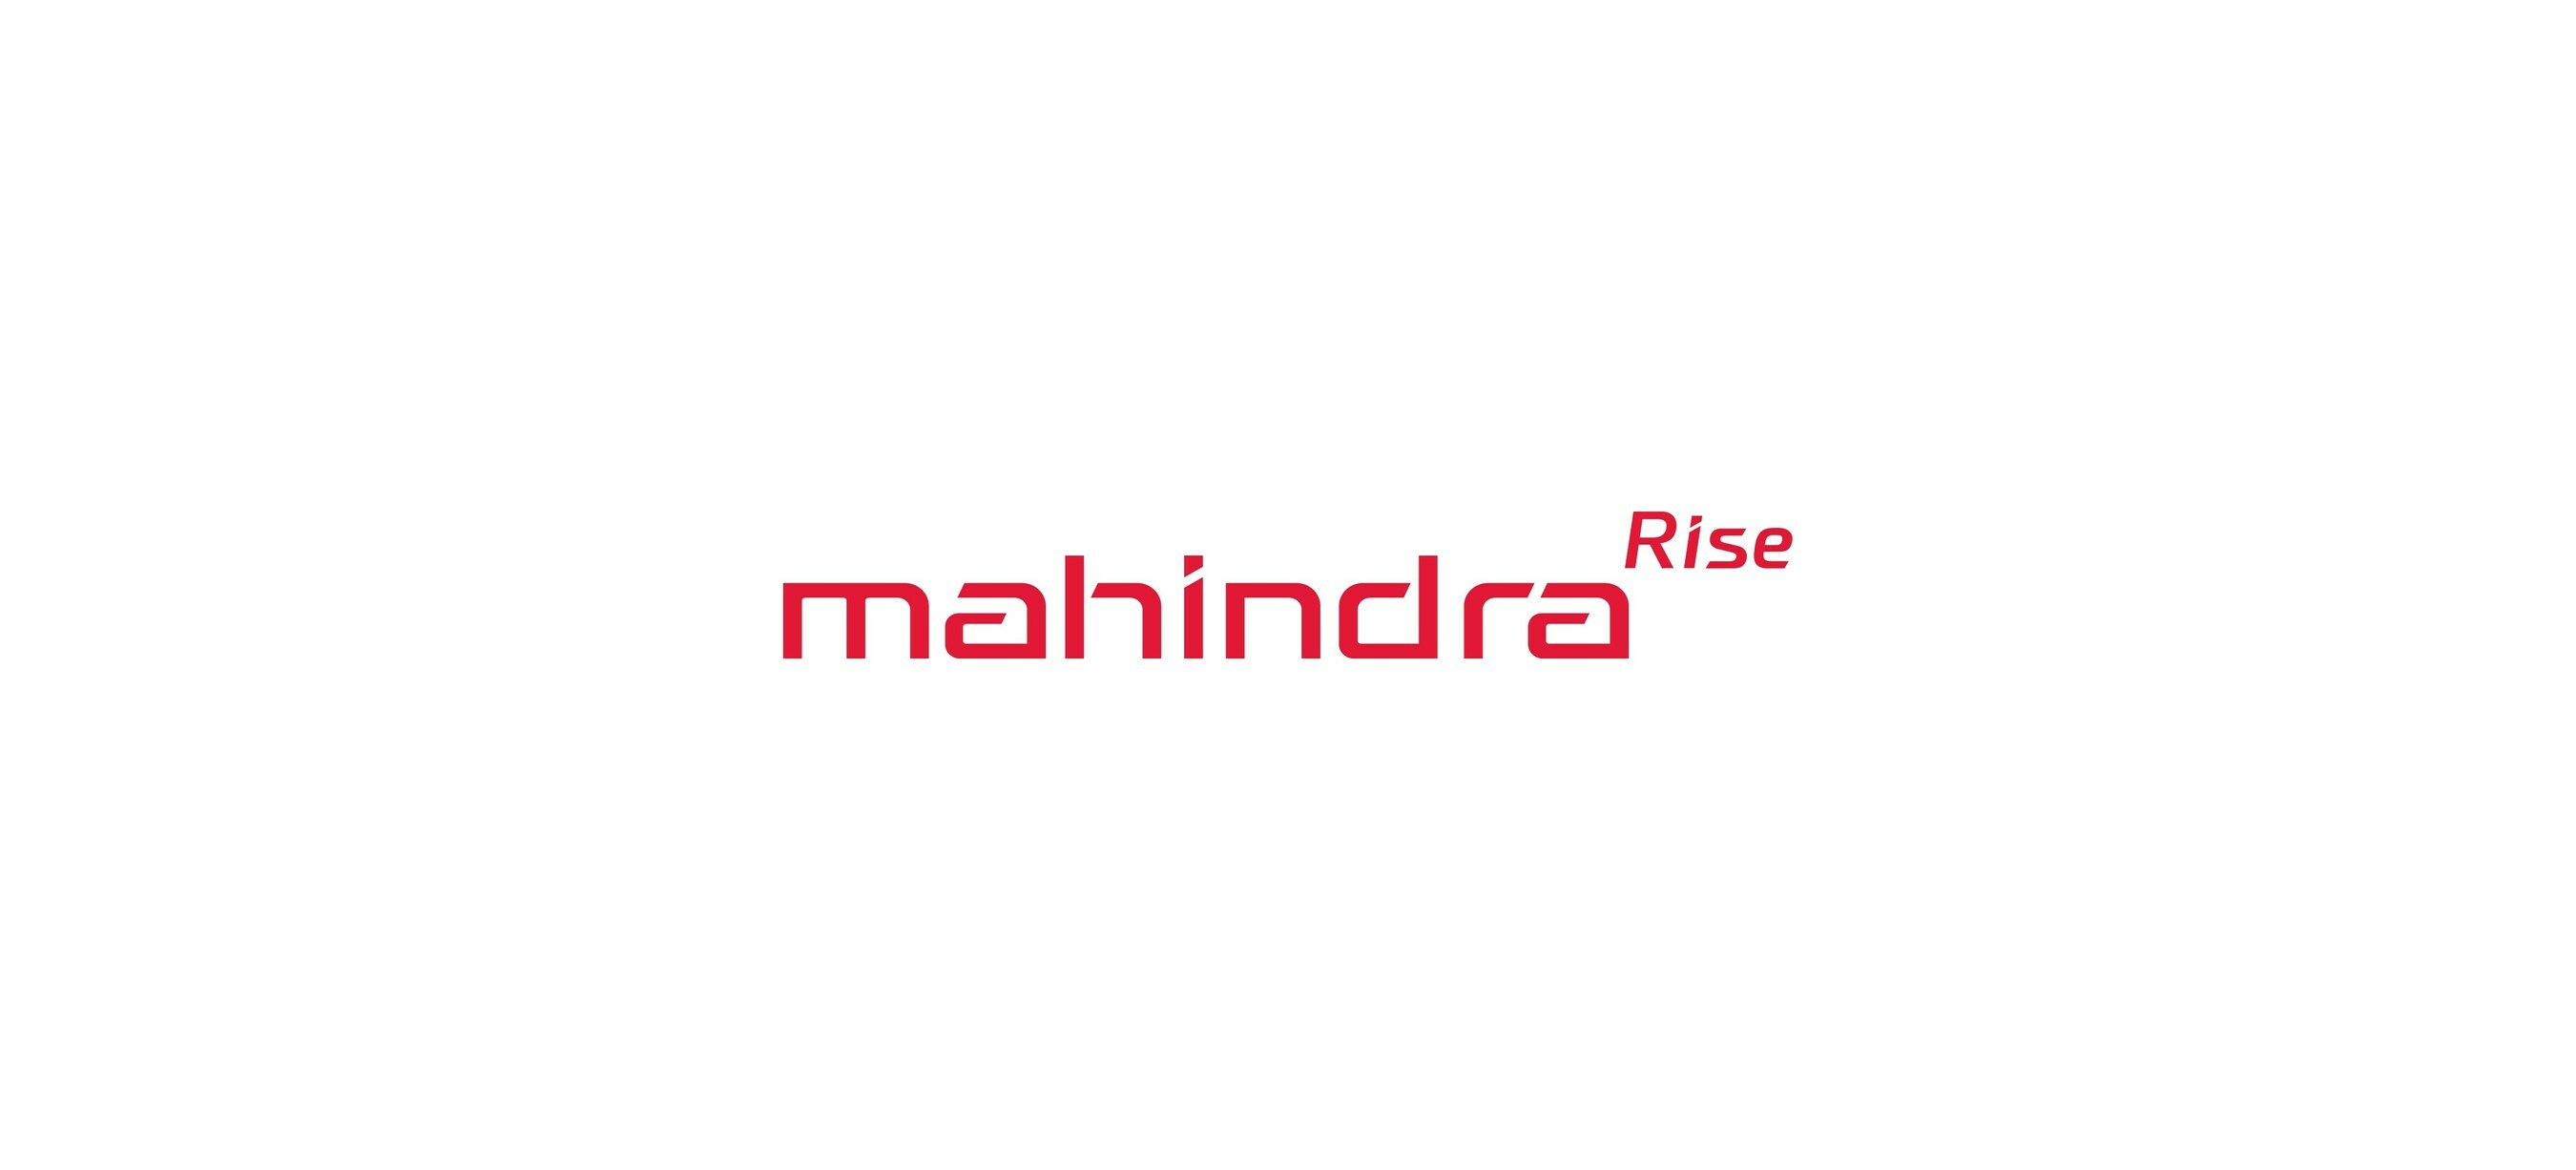 mahindra rise wallpapers